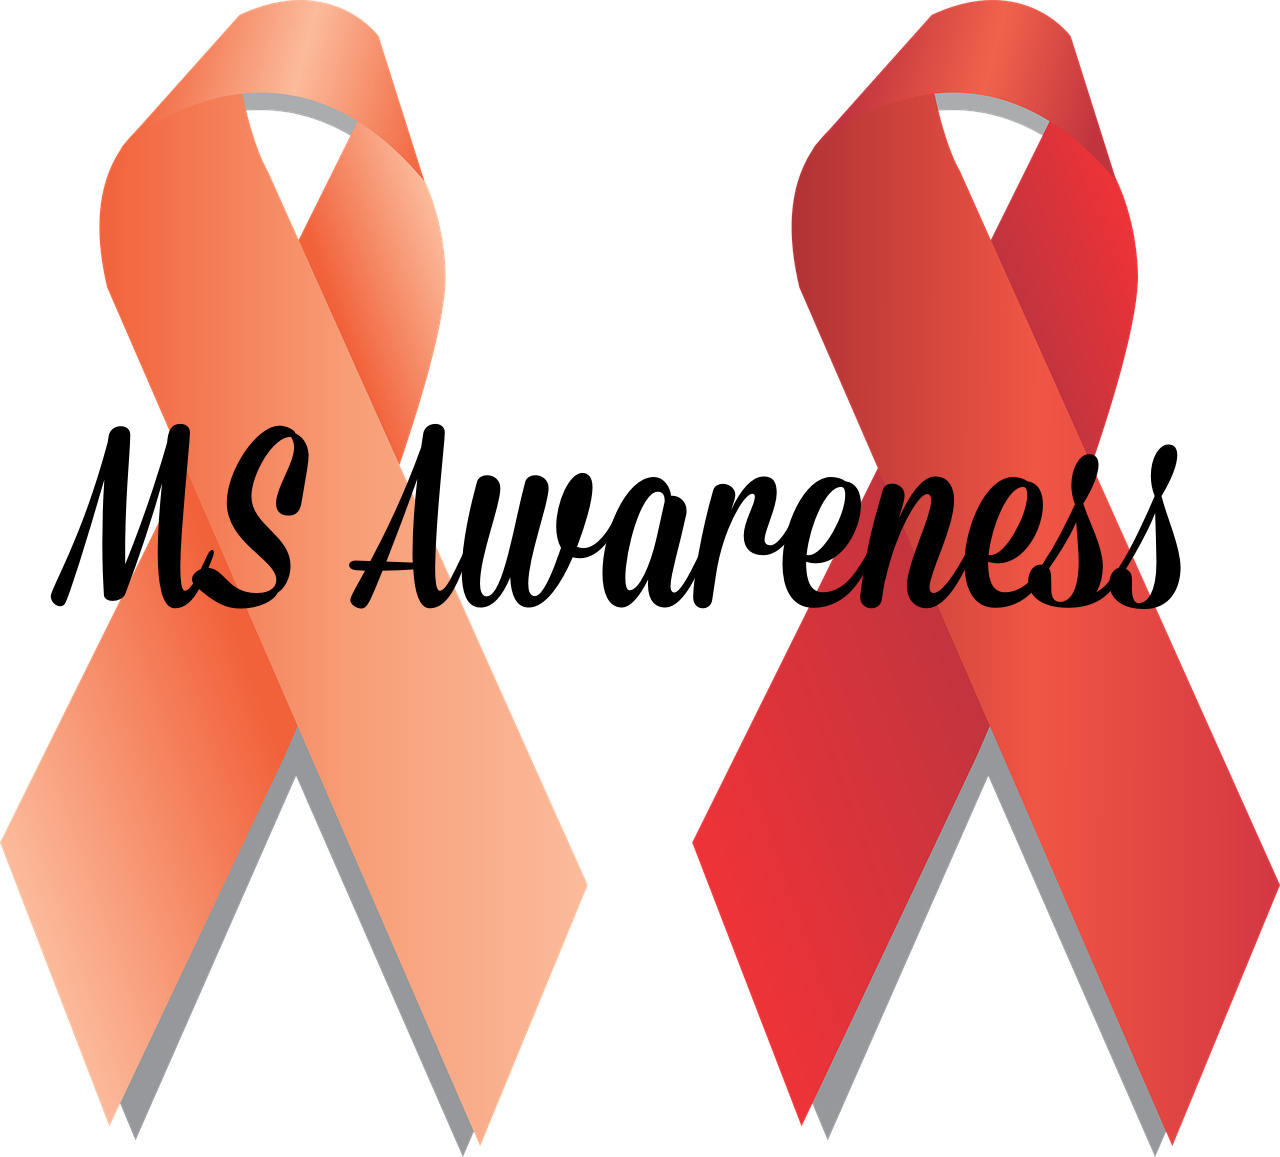 MS Awareness Ribbons